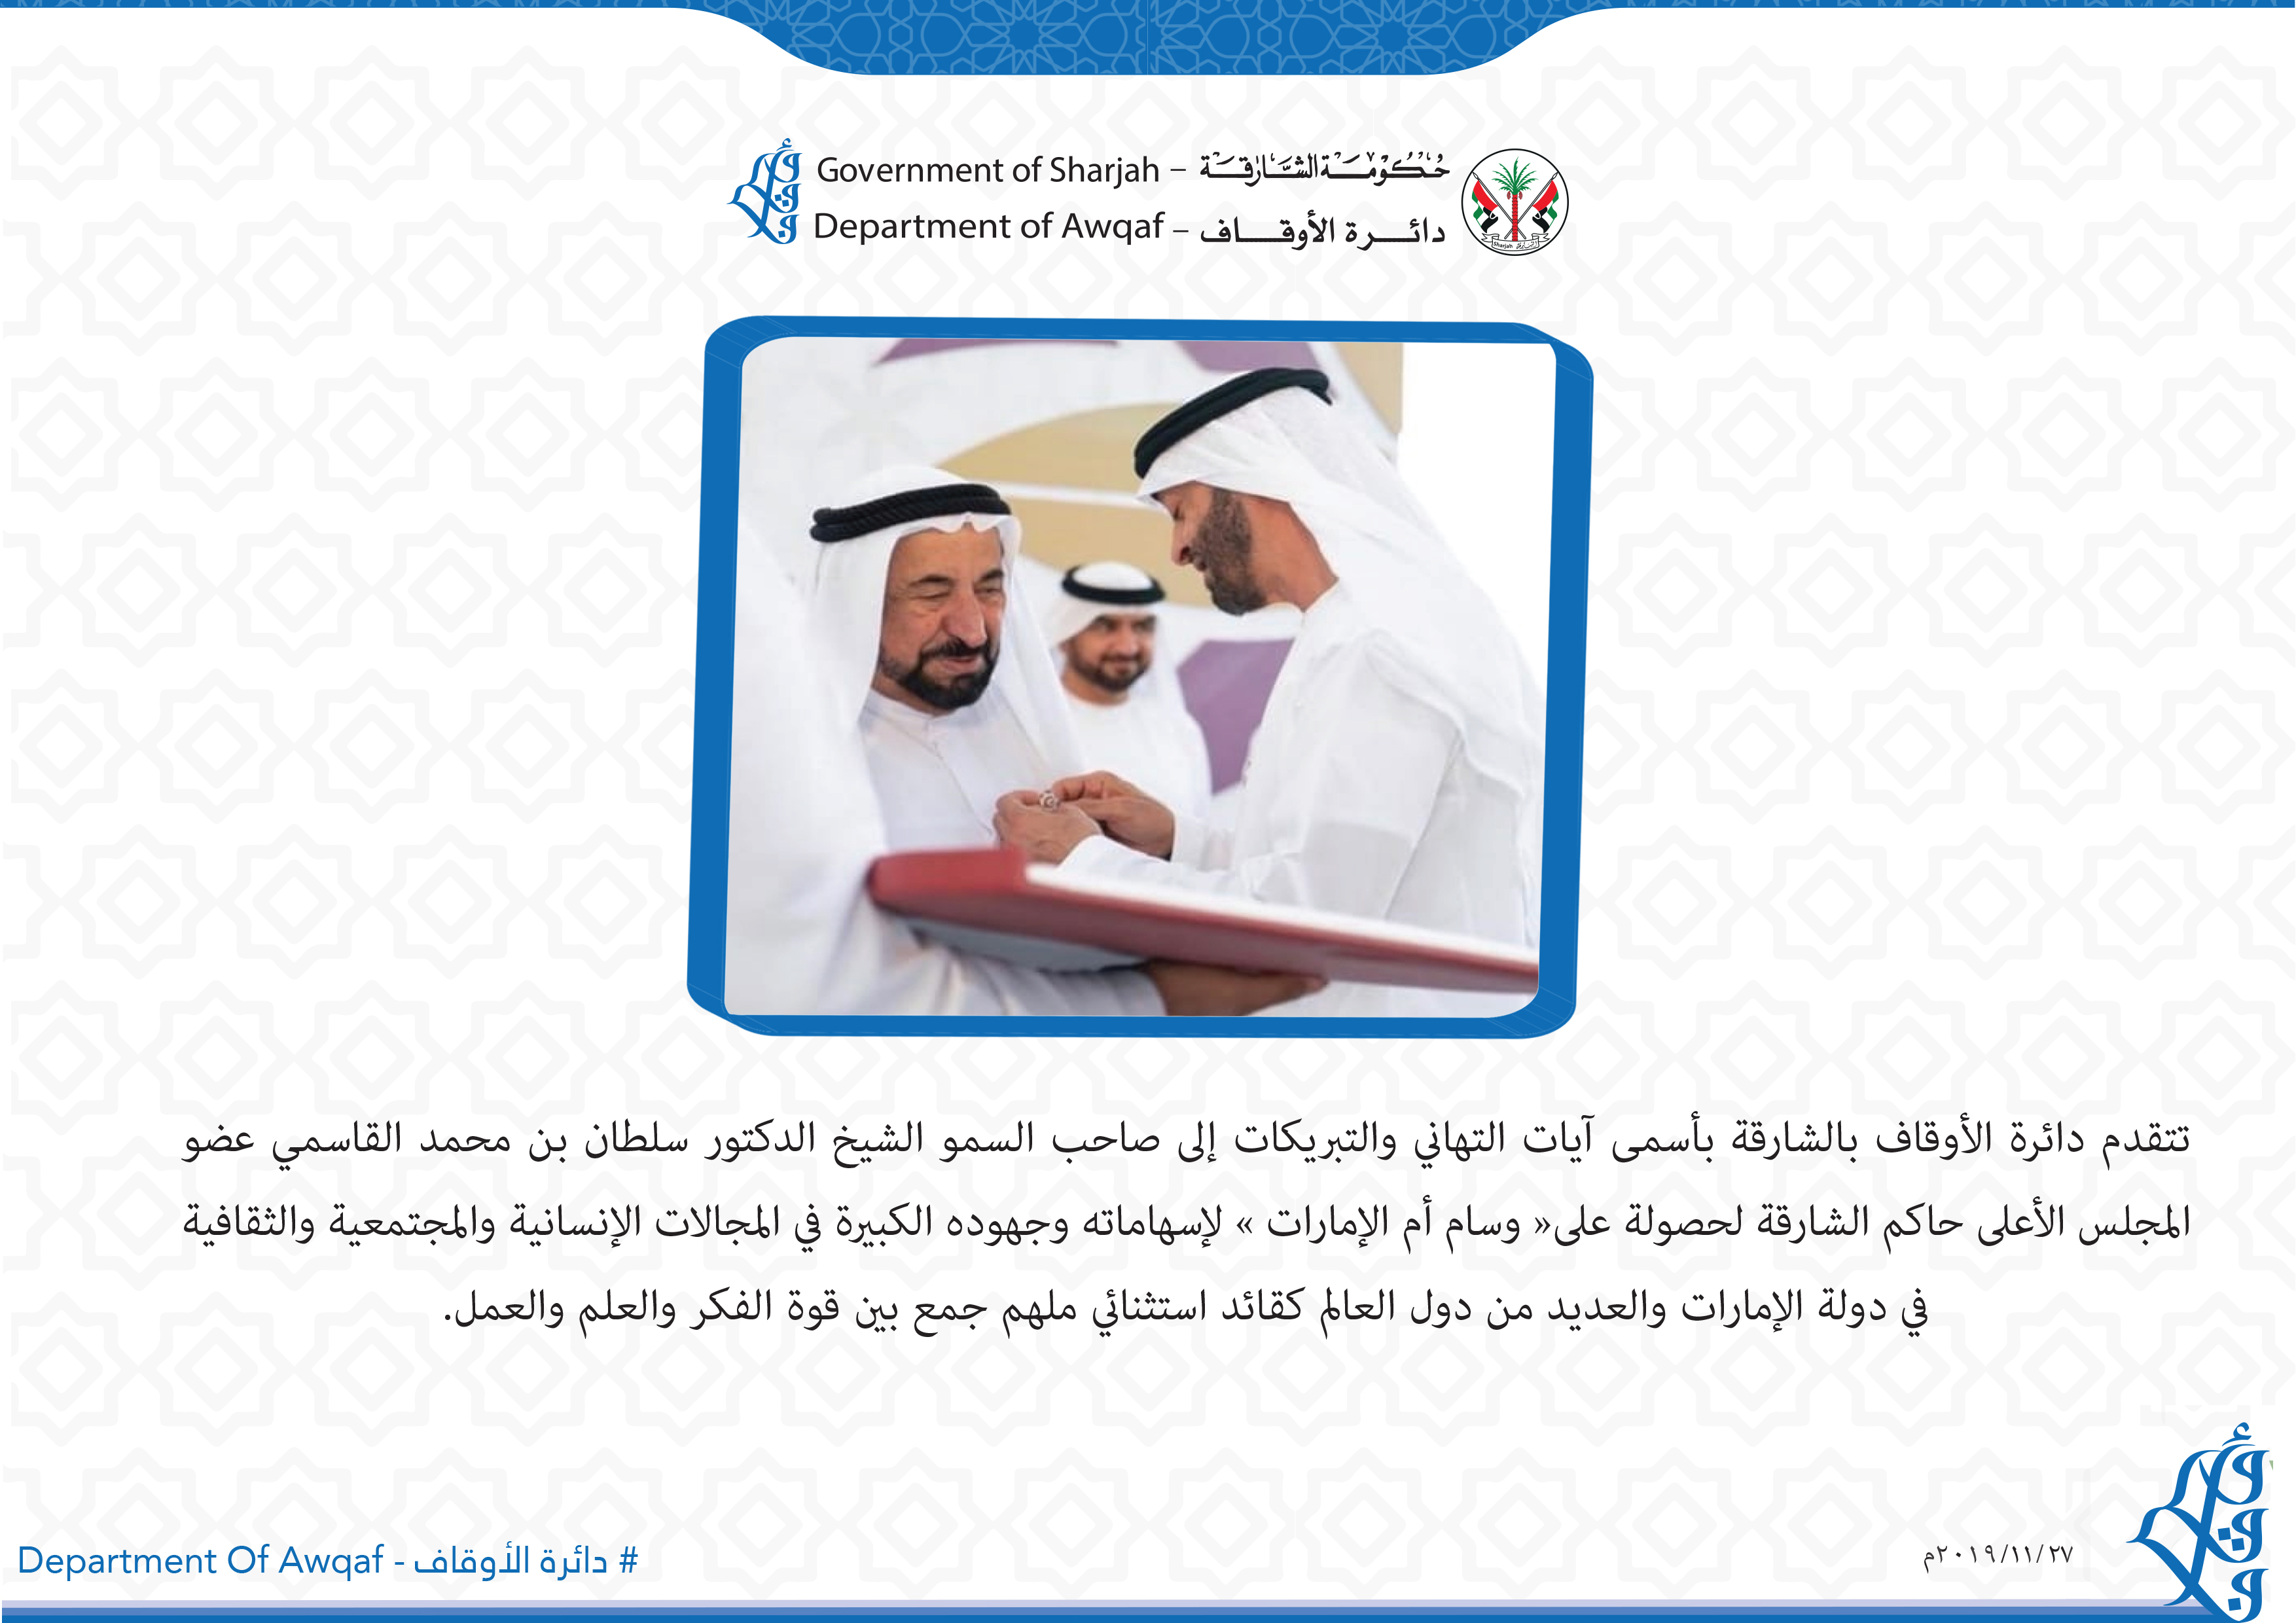 صاحب السمو الشيخ الدكتور سلطان بن محمد القاسمي عضو المجلس الأعلى حاكم الشارقة لحصولة على« وسام أم الإمارات »